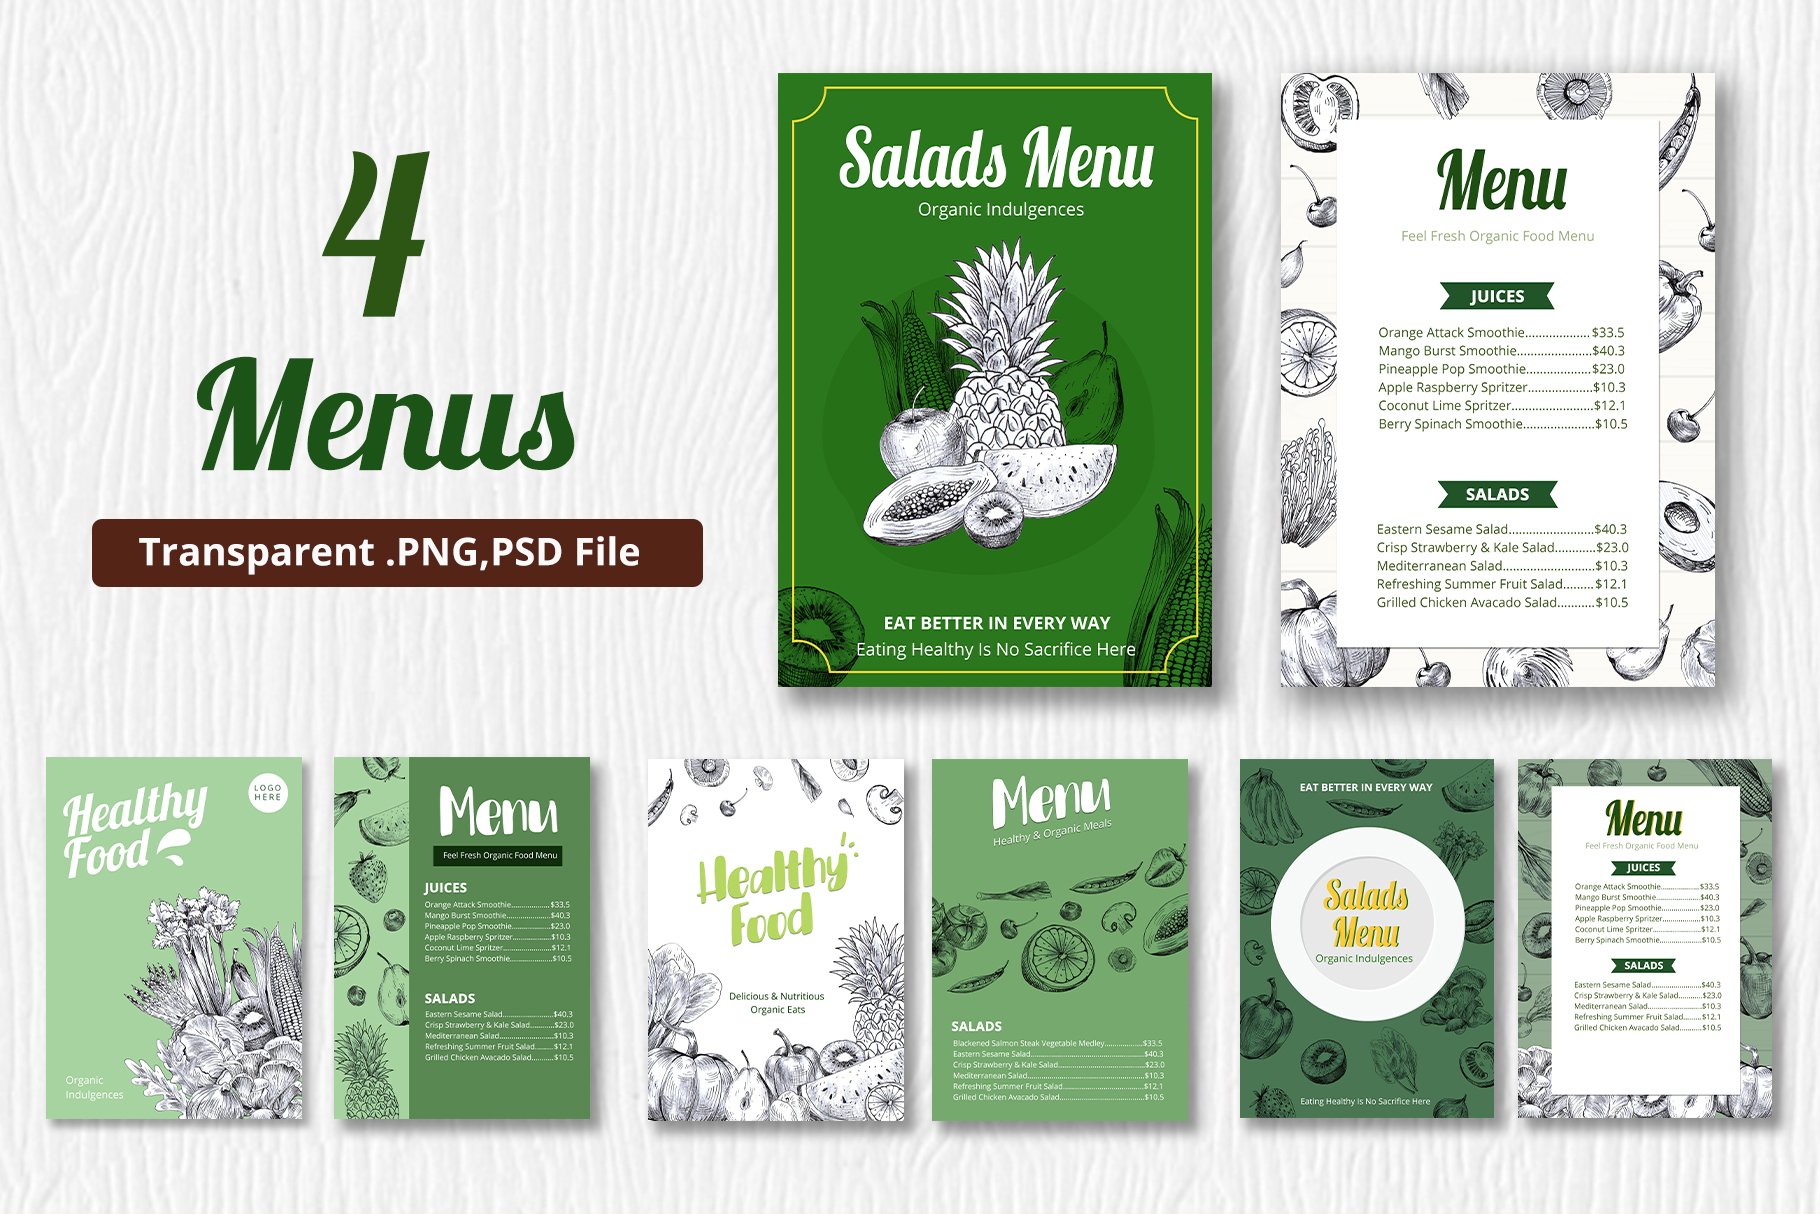 Some examples of vegan menu.